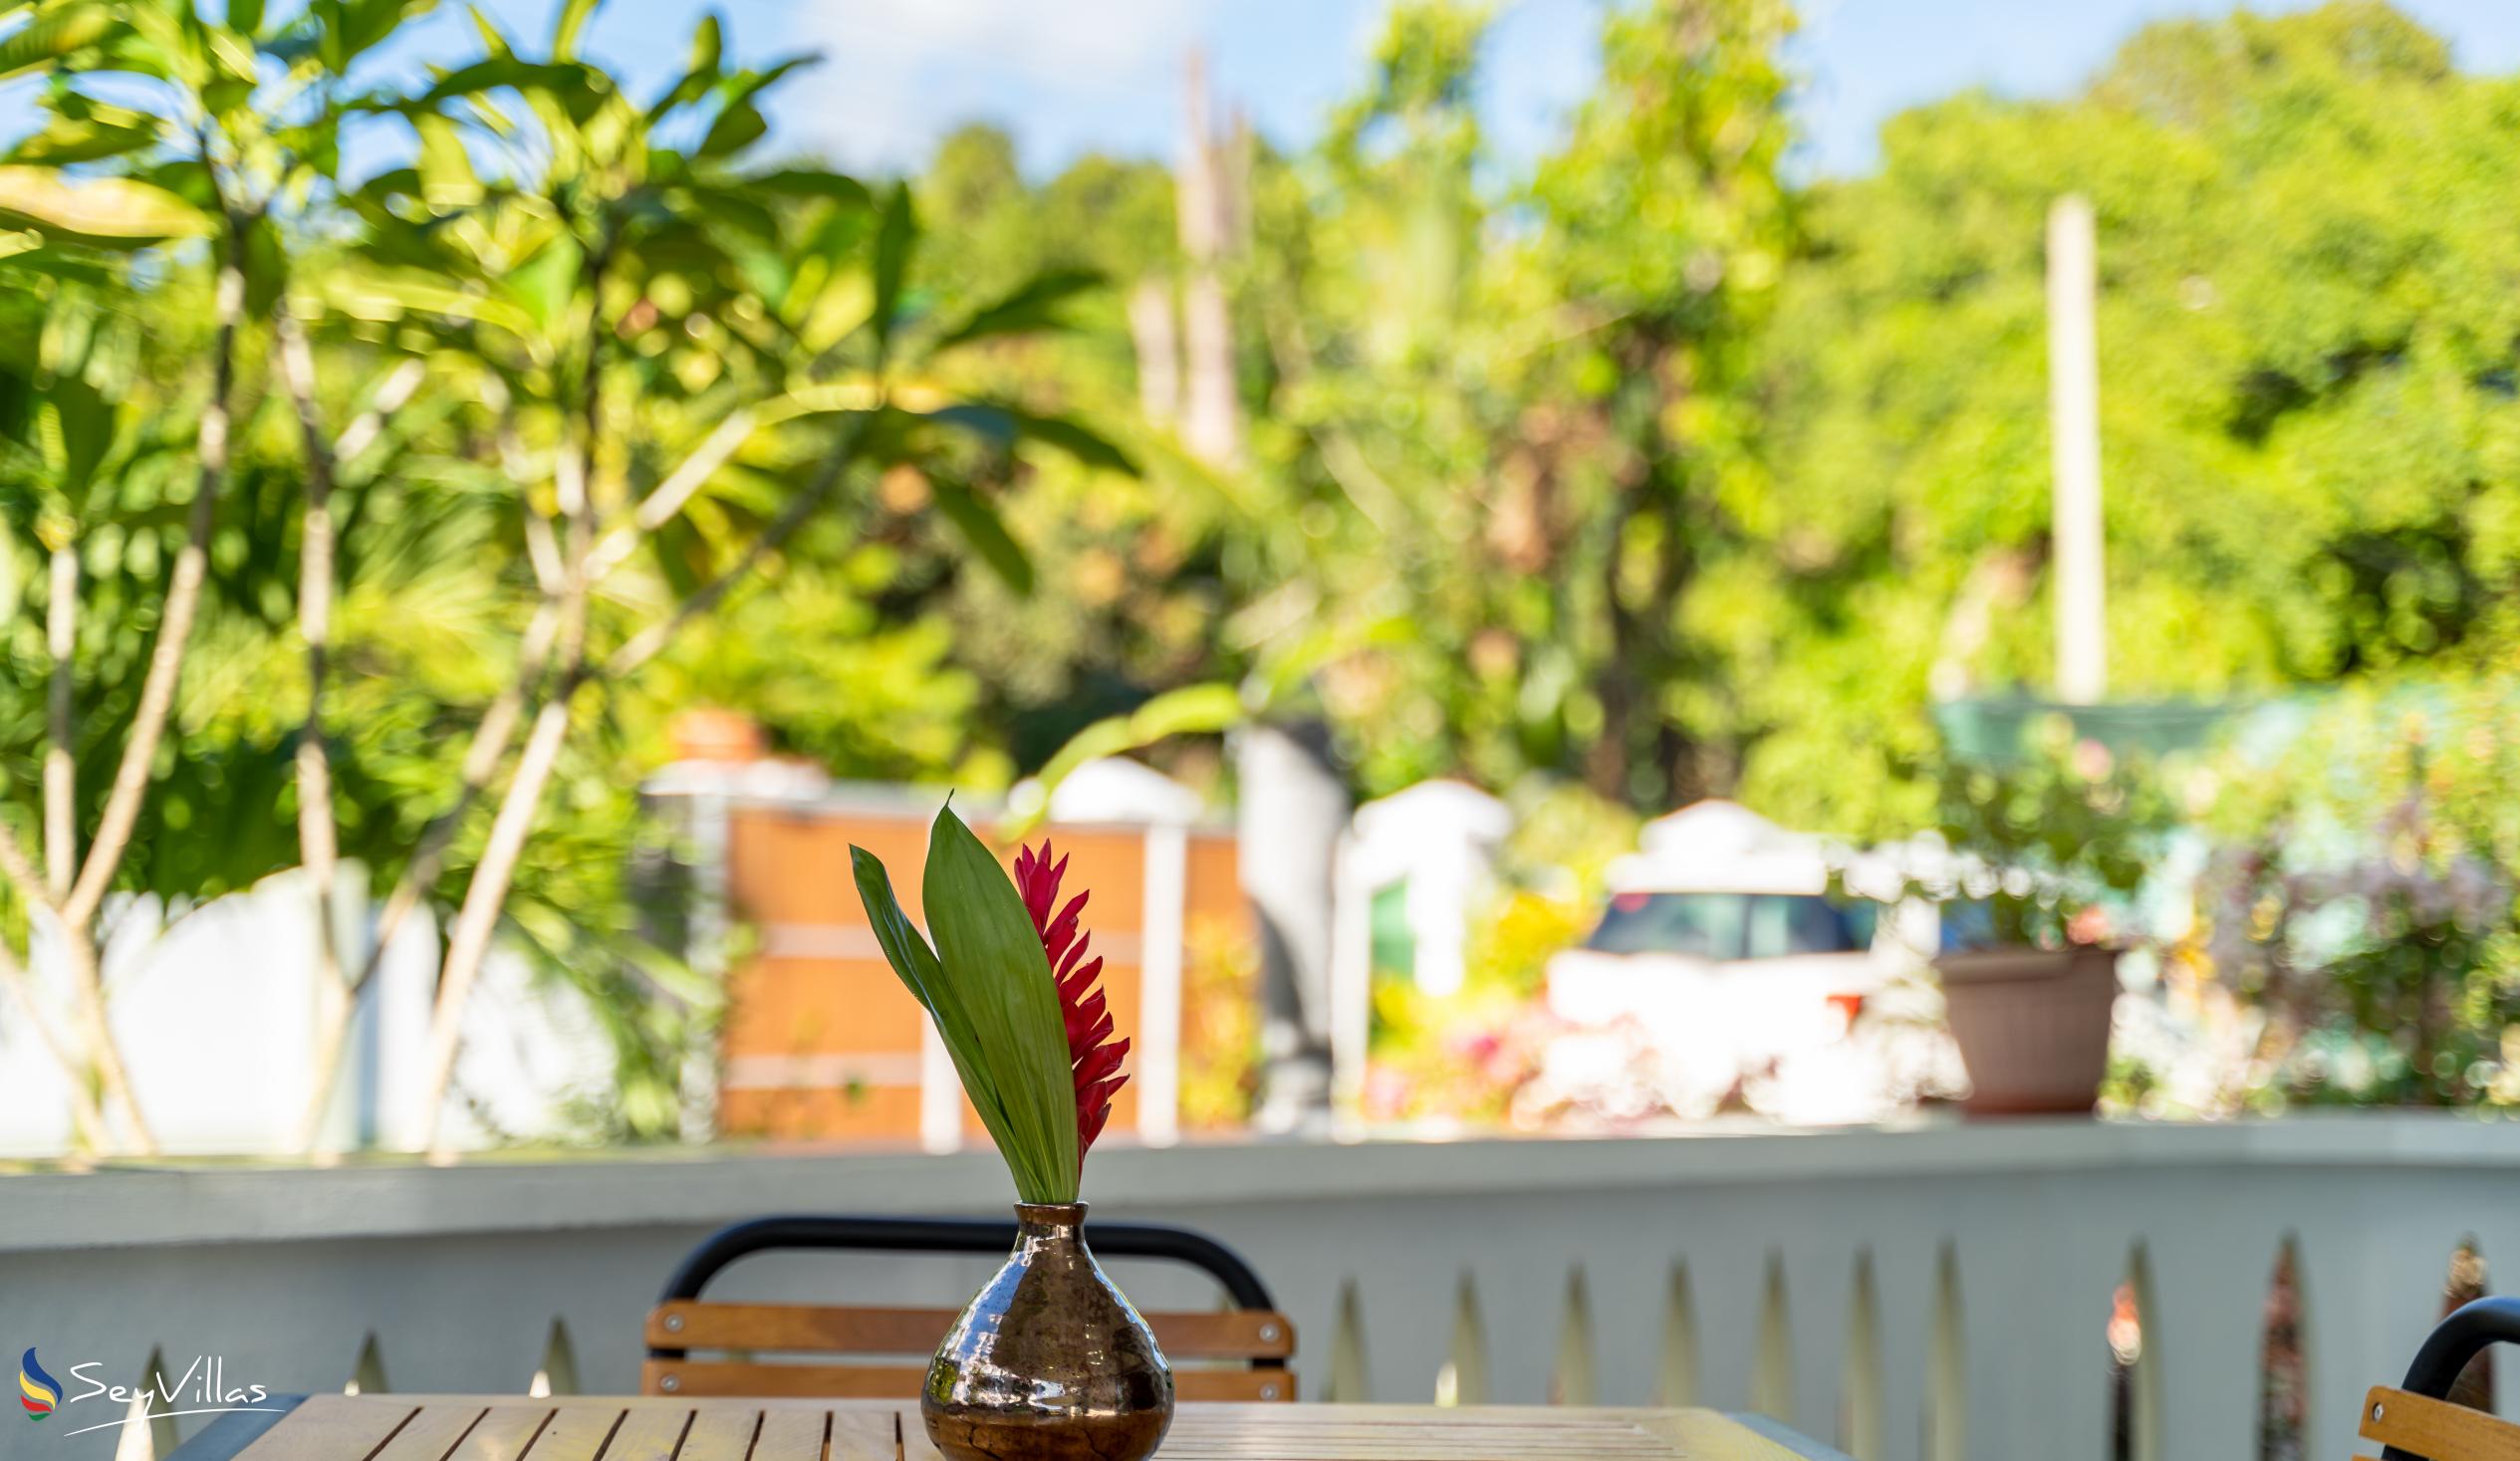 Foto 49: 340 Degrees Mountain View Apartments - Appartamento con vista sul giardino - 2 Camere - Mahé (Seychelles)